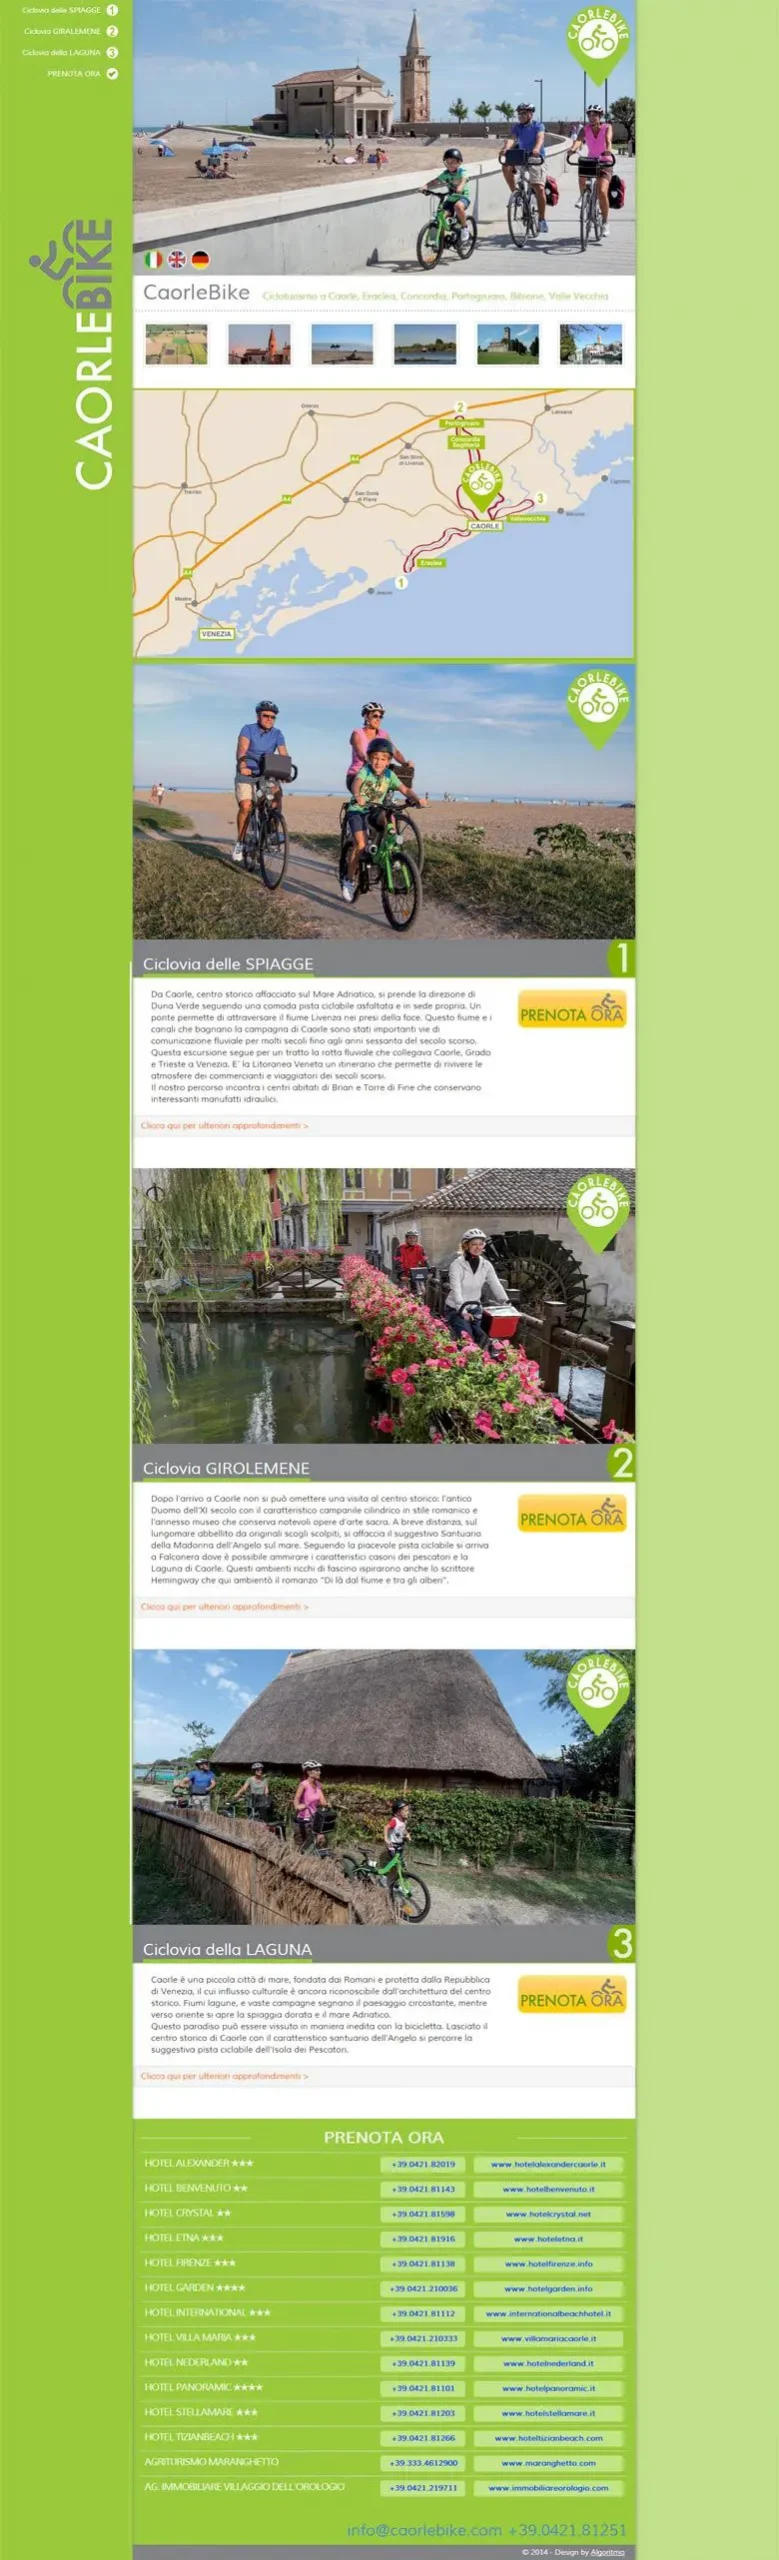 Caorle bike homepage